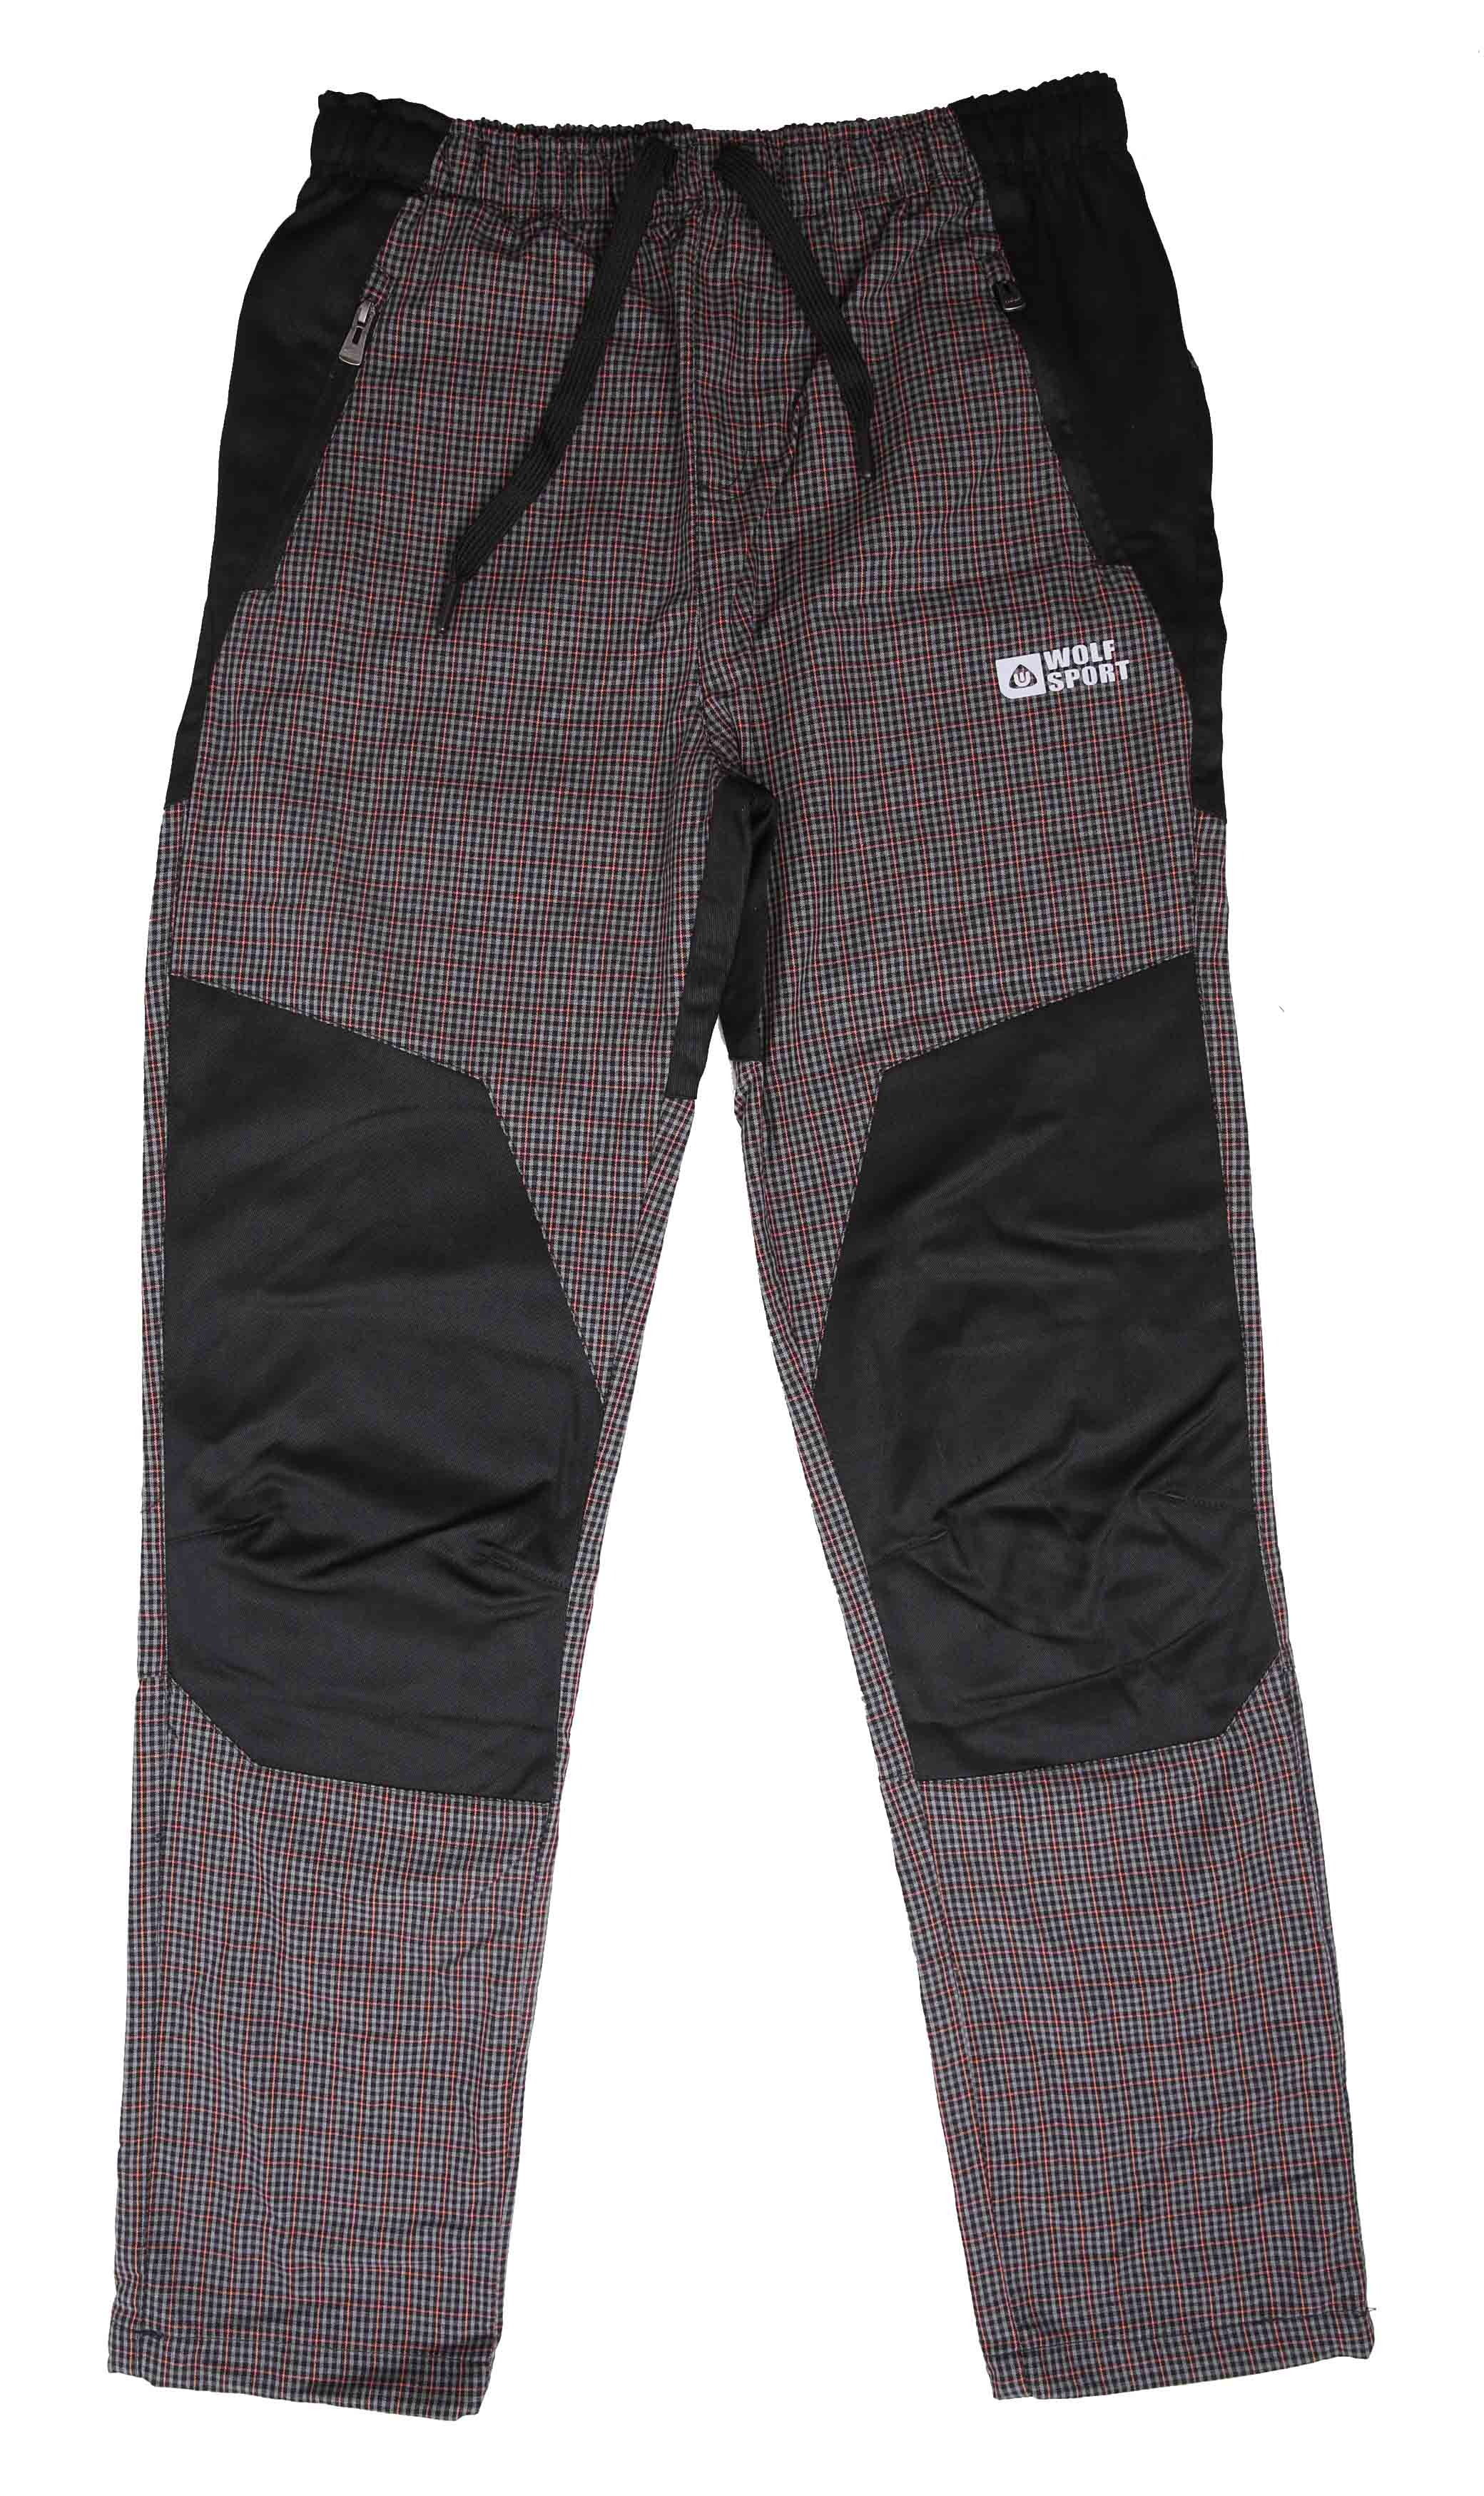 Chlapecké plátěné kalhoty - Wolf T2160, šedá Barva: Šedá, Velikost: 158